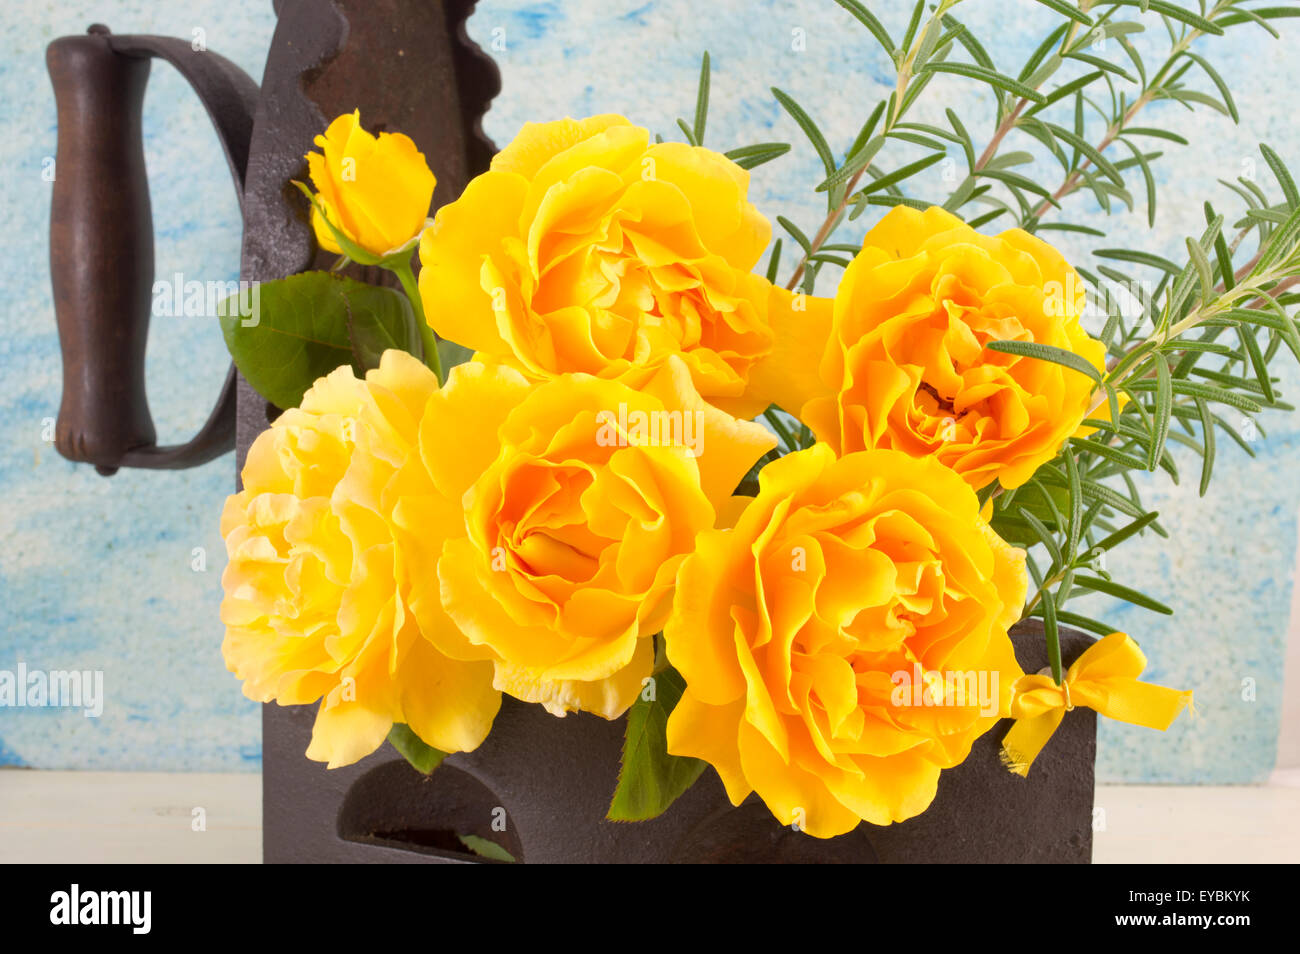 Bouquet de rosas amarillas con romero en una vendimia de hierro como florero, sobre una mesa de madera Foto de stock